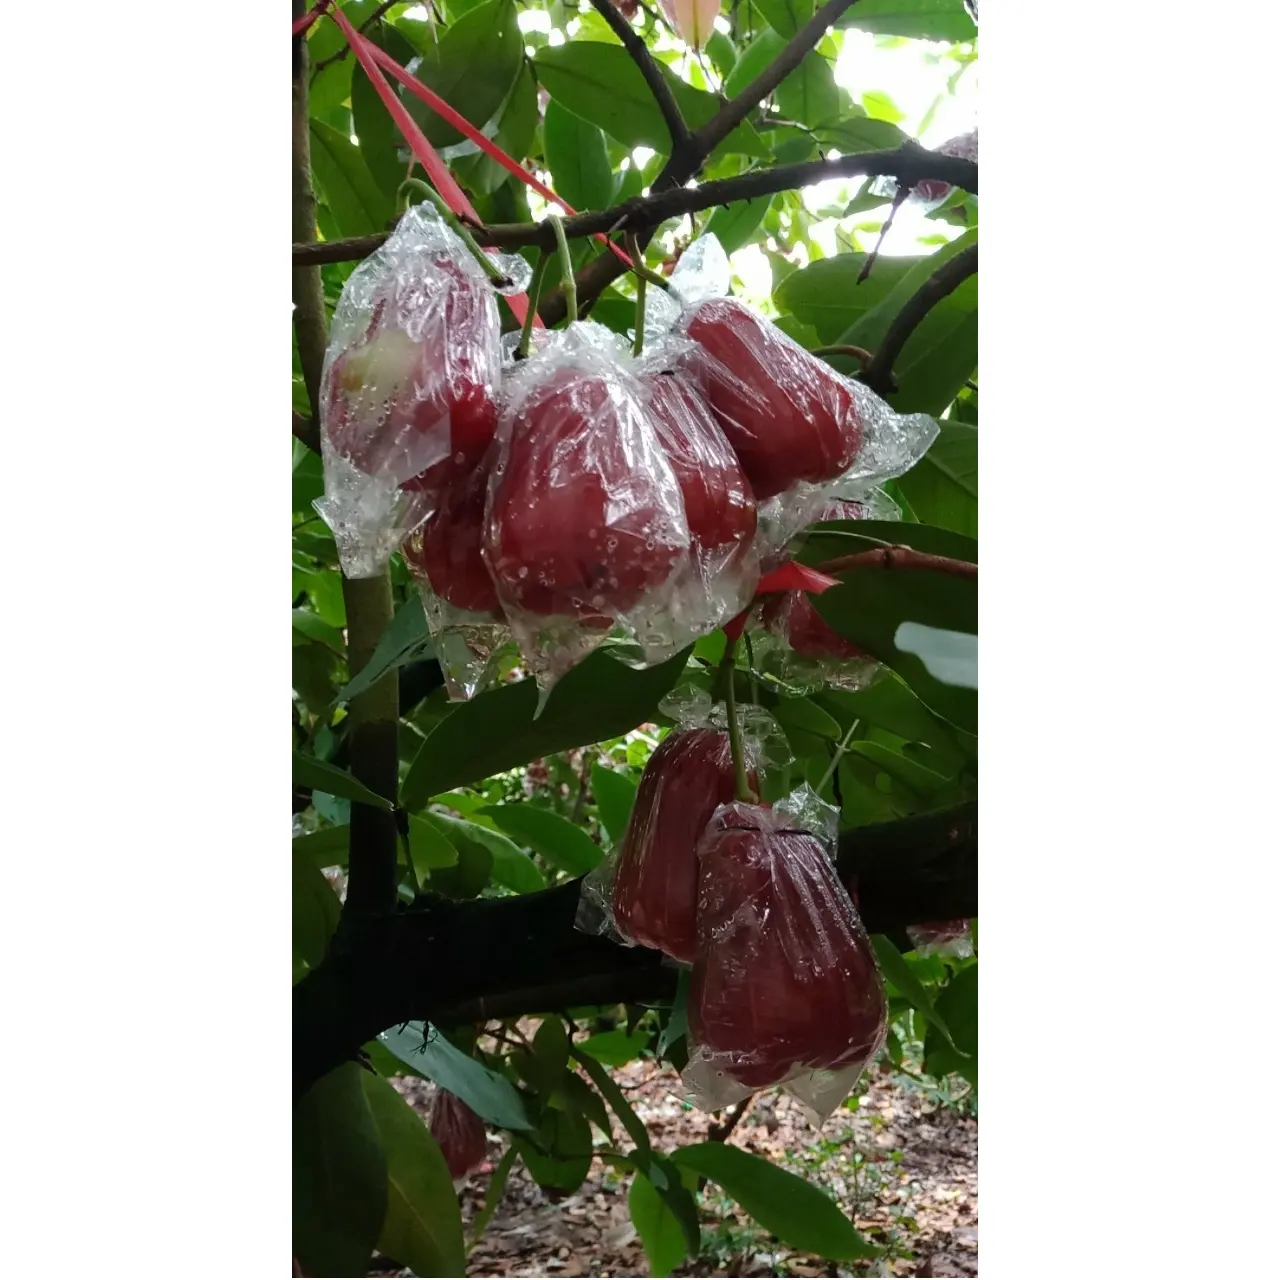 Meist verkaufte frische natürliche milde süße reife Reife Rot Ein Phuoc Rose apple aus Vietnam zum Verkauf exportiert